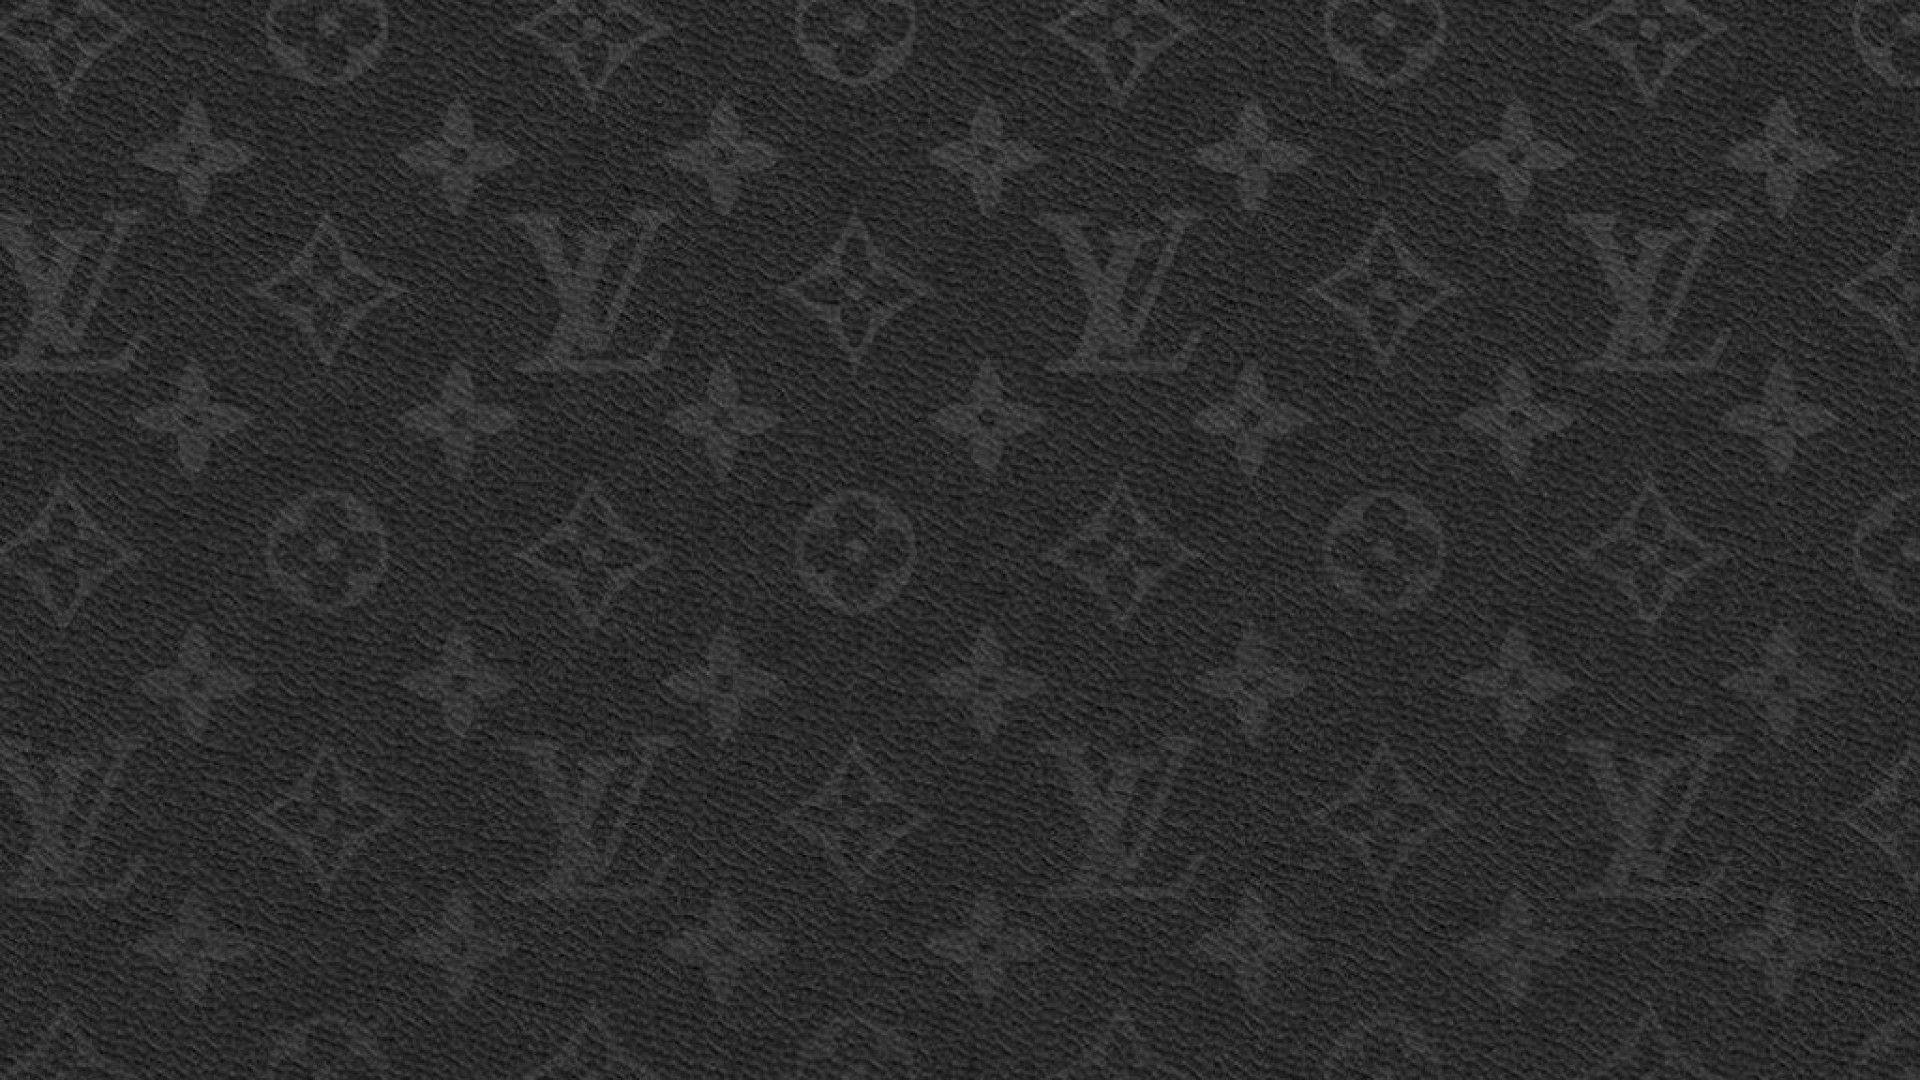 Fond D écran Louis Vuitton Supreme